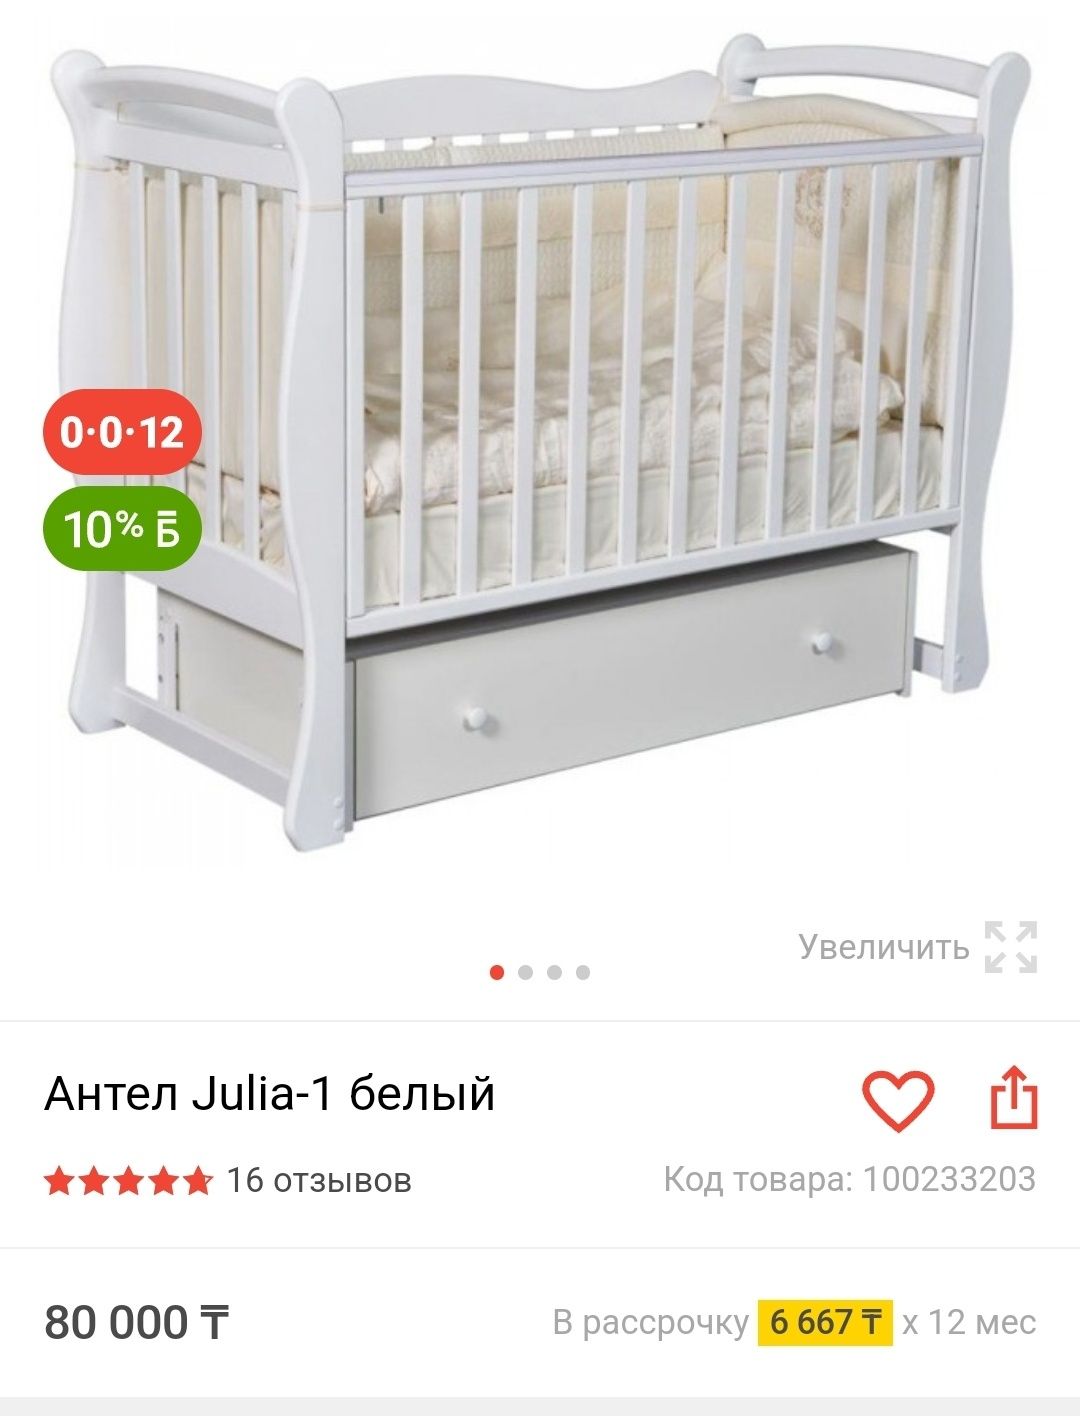 Детская кроватка Антел Julia-1